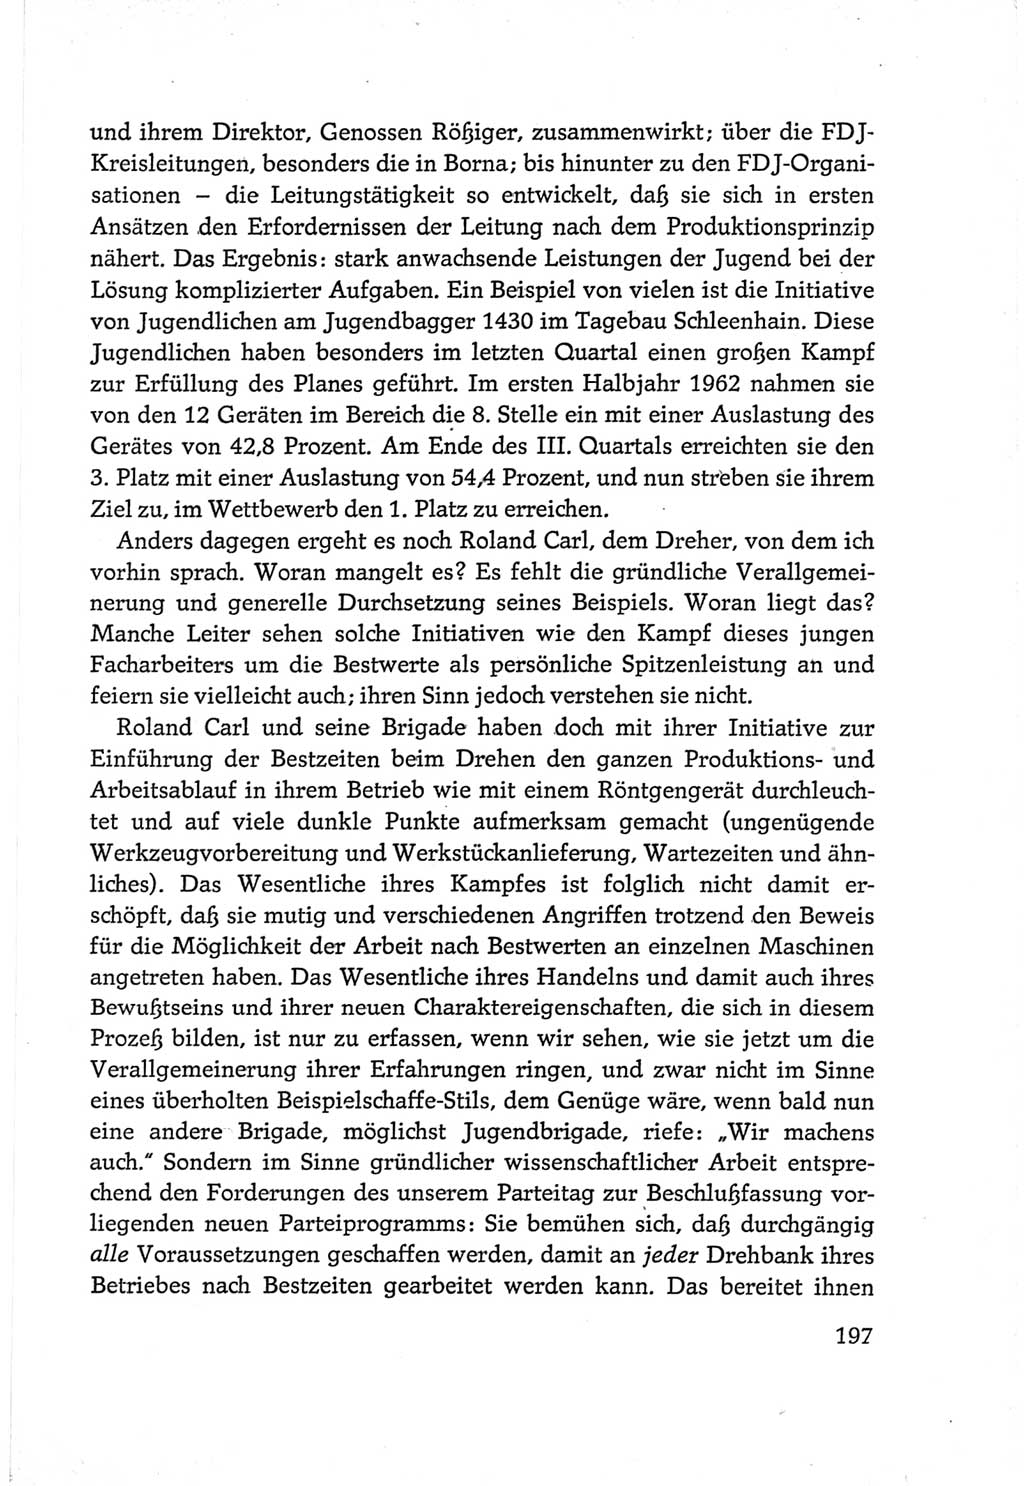 Protokoll der Verhandlungen des Ⅵ. Parteitages der Sozialistischen Einheitspartei Deutschlands (SED) [Deutsche Demokratische Republik (DDR)] 1963, Band Ⅲ, Seite 197 (Prot. Verh. Ⅵ. PT SED DDR 1963, Bd. Ⅲ, S. 197)